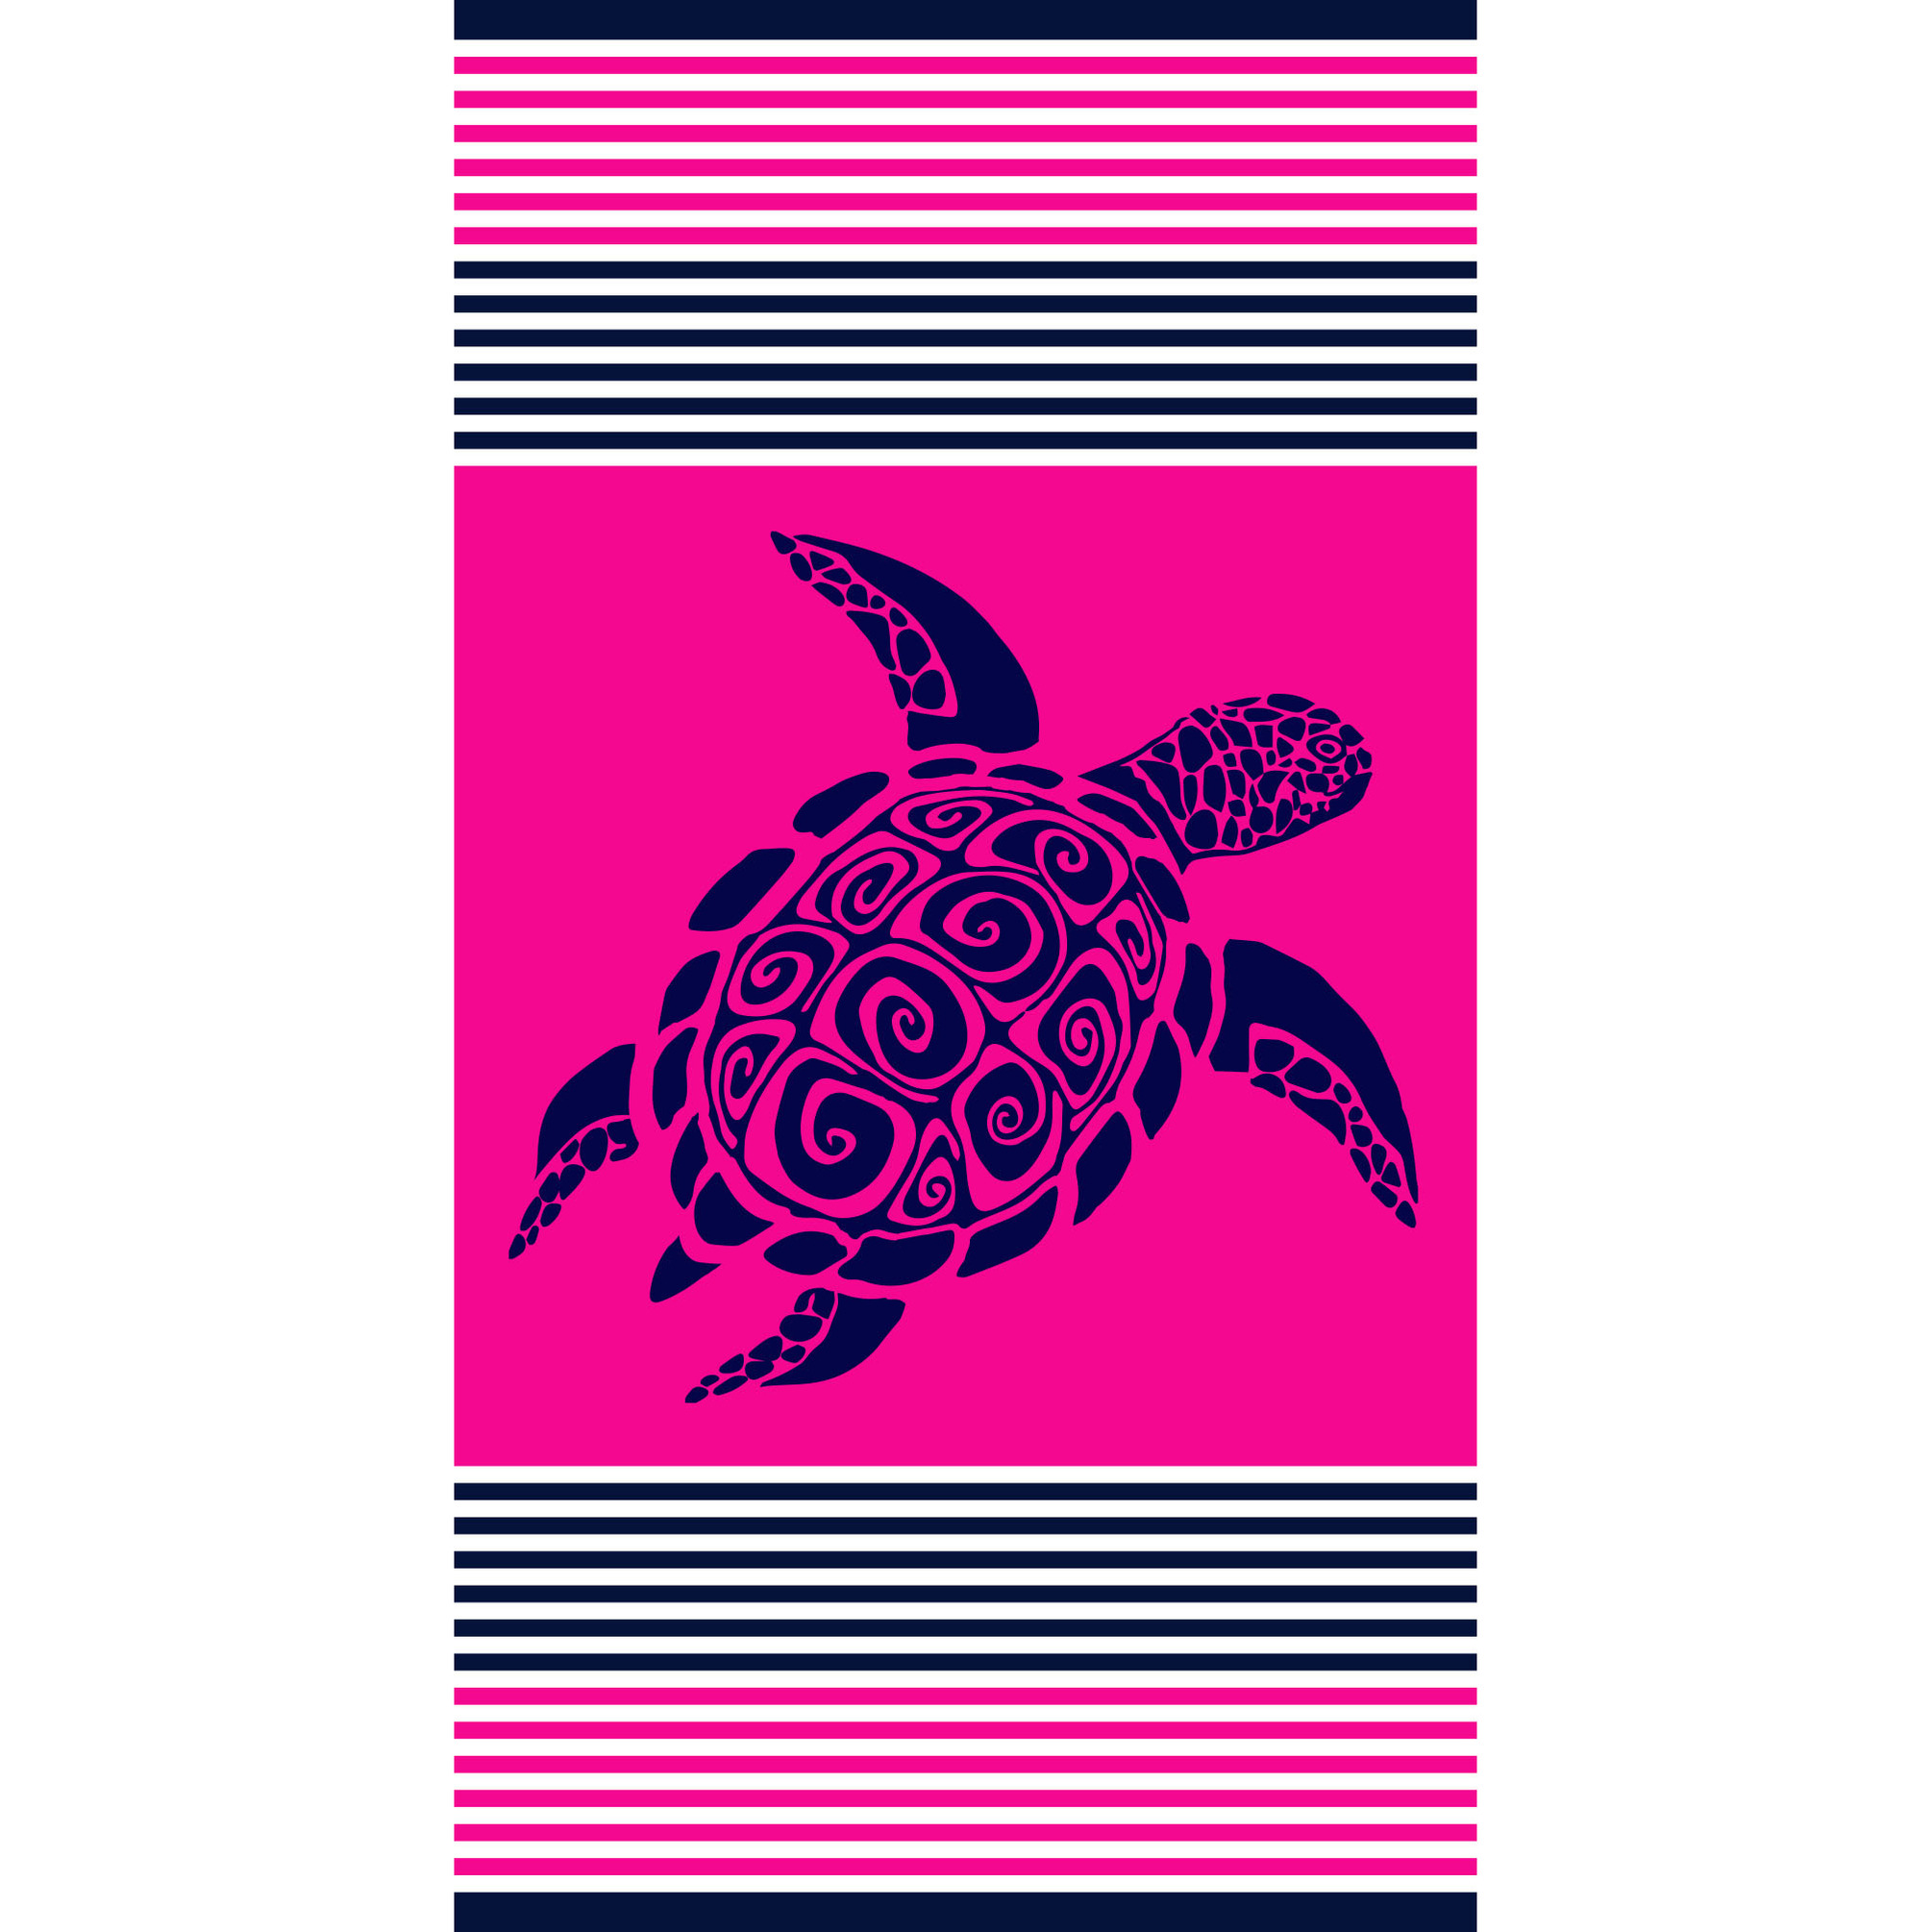 Fuchsia badlaken met schildpad print voor volwassenen 90 x 170